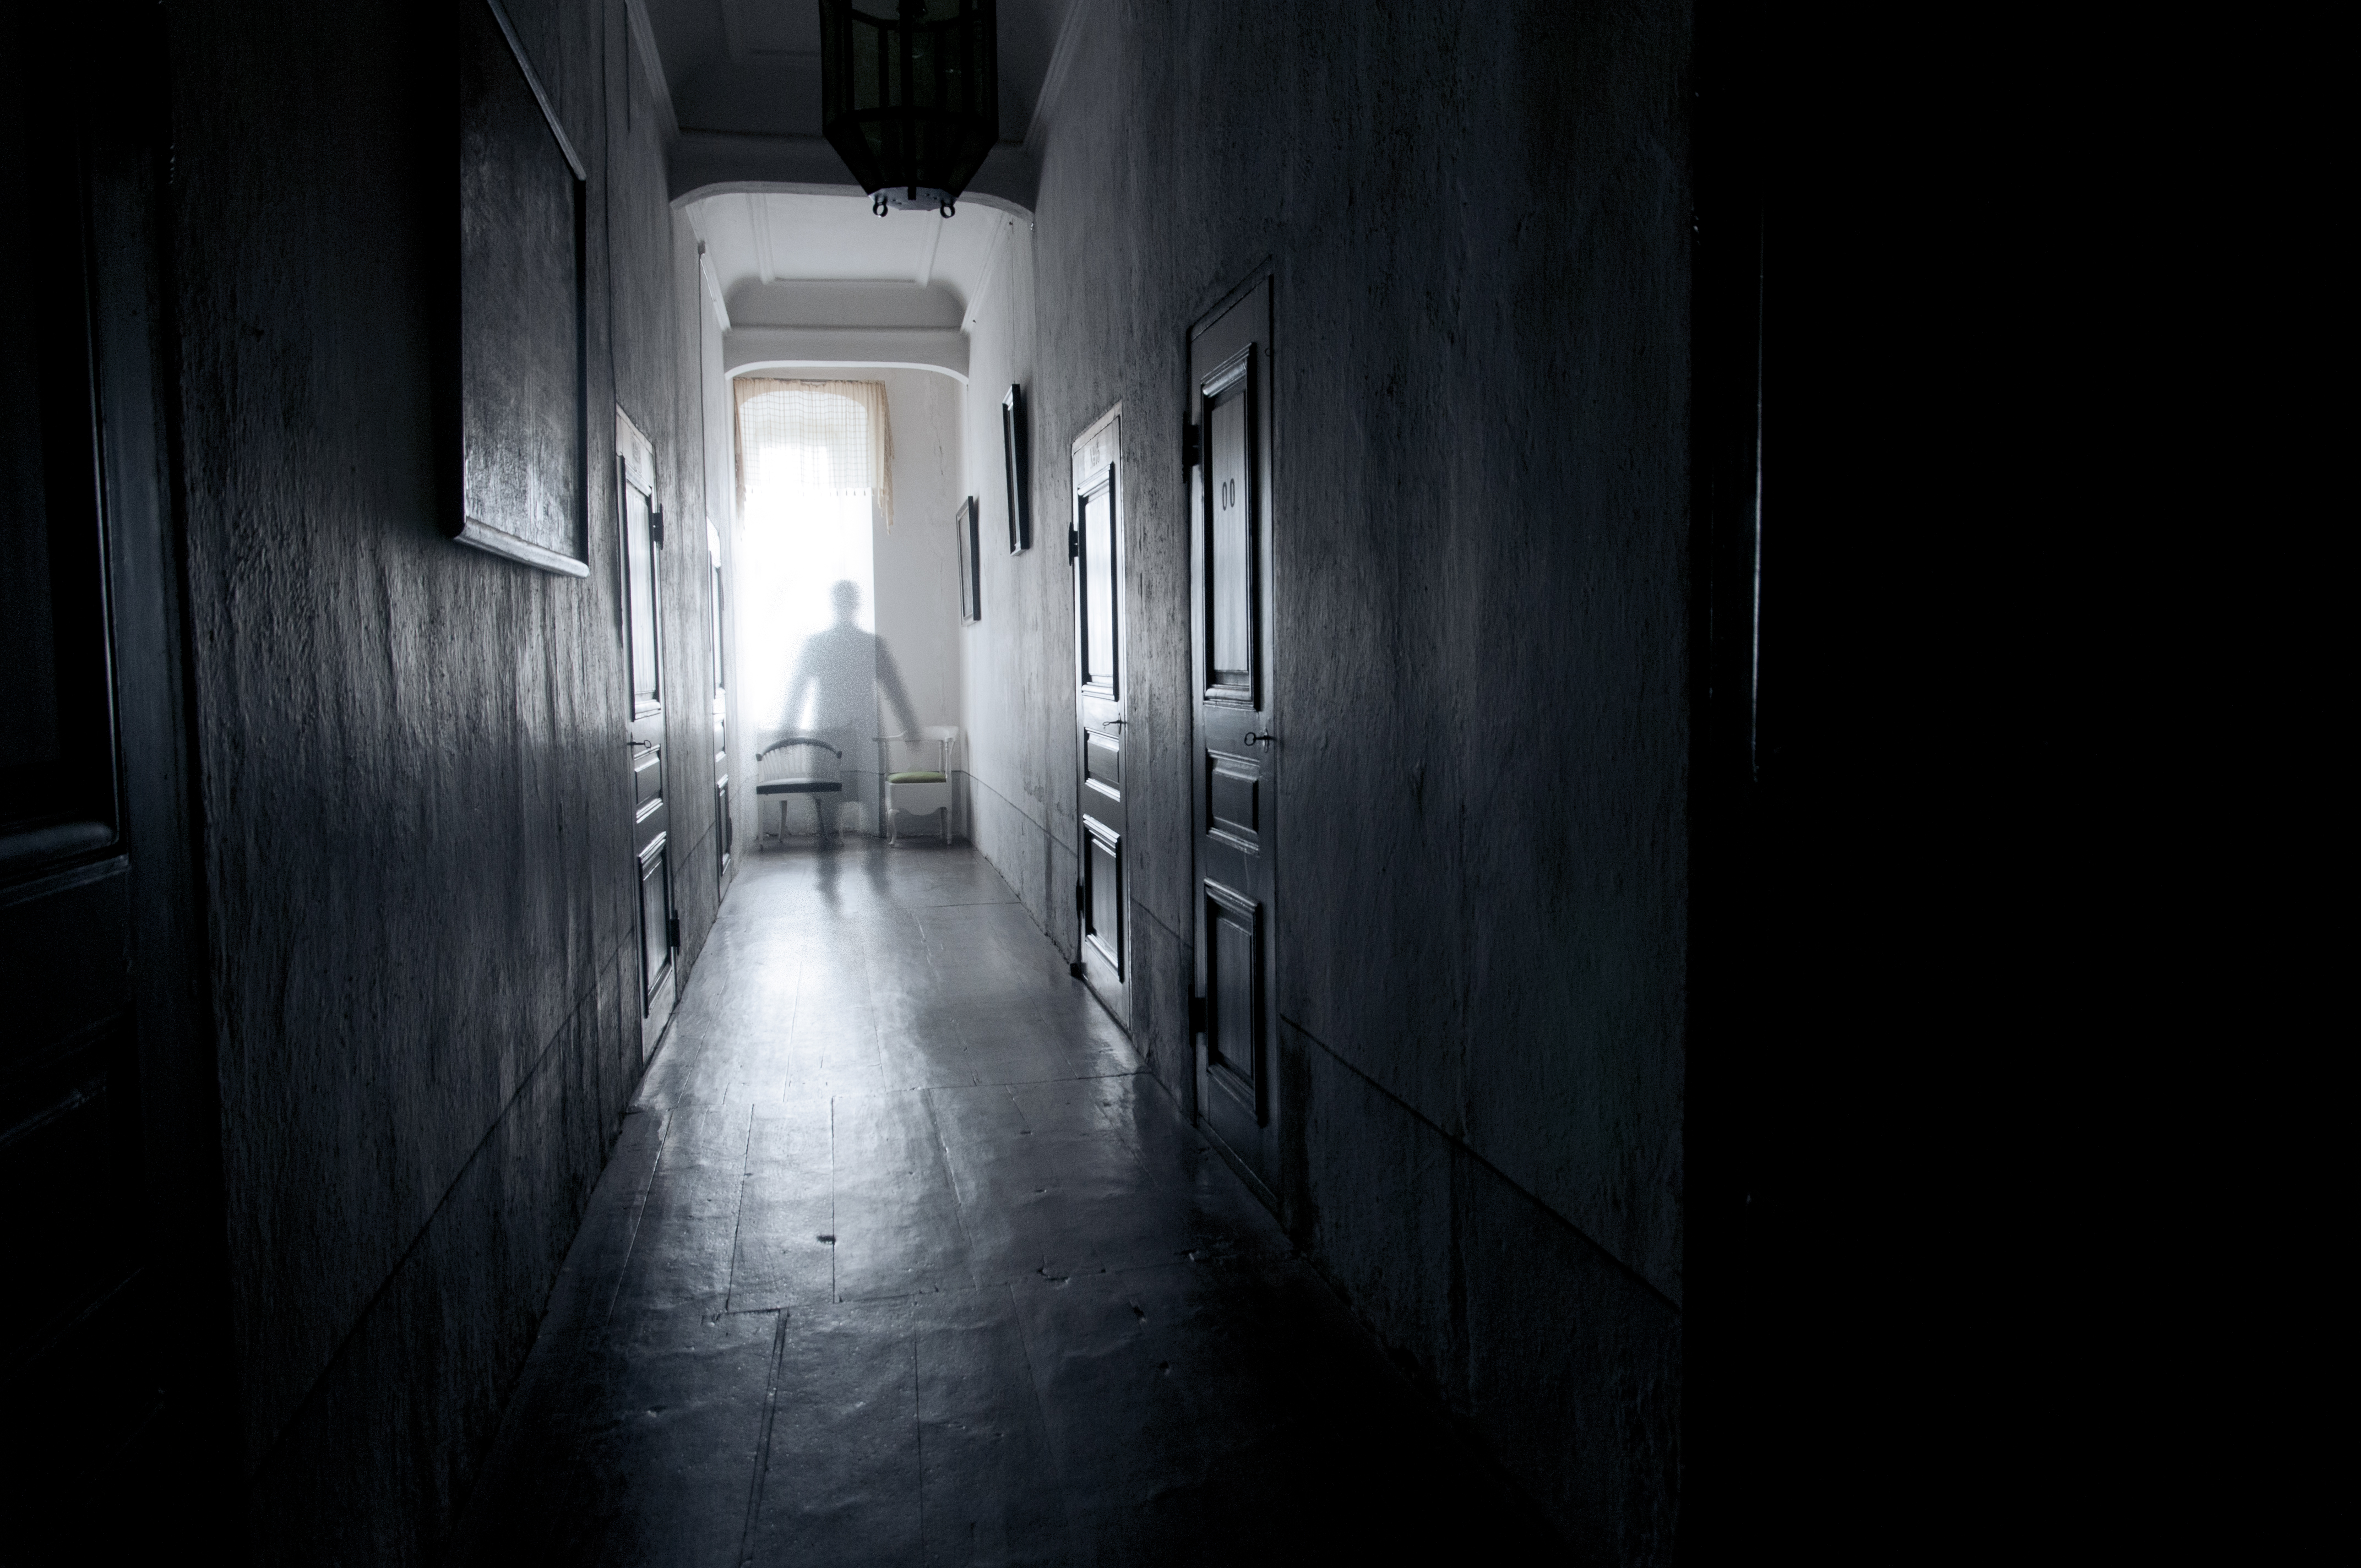 Ett svartvitt fotografi av en korridor där en spöklik gestalt visar sig.